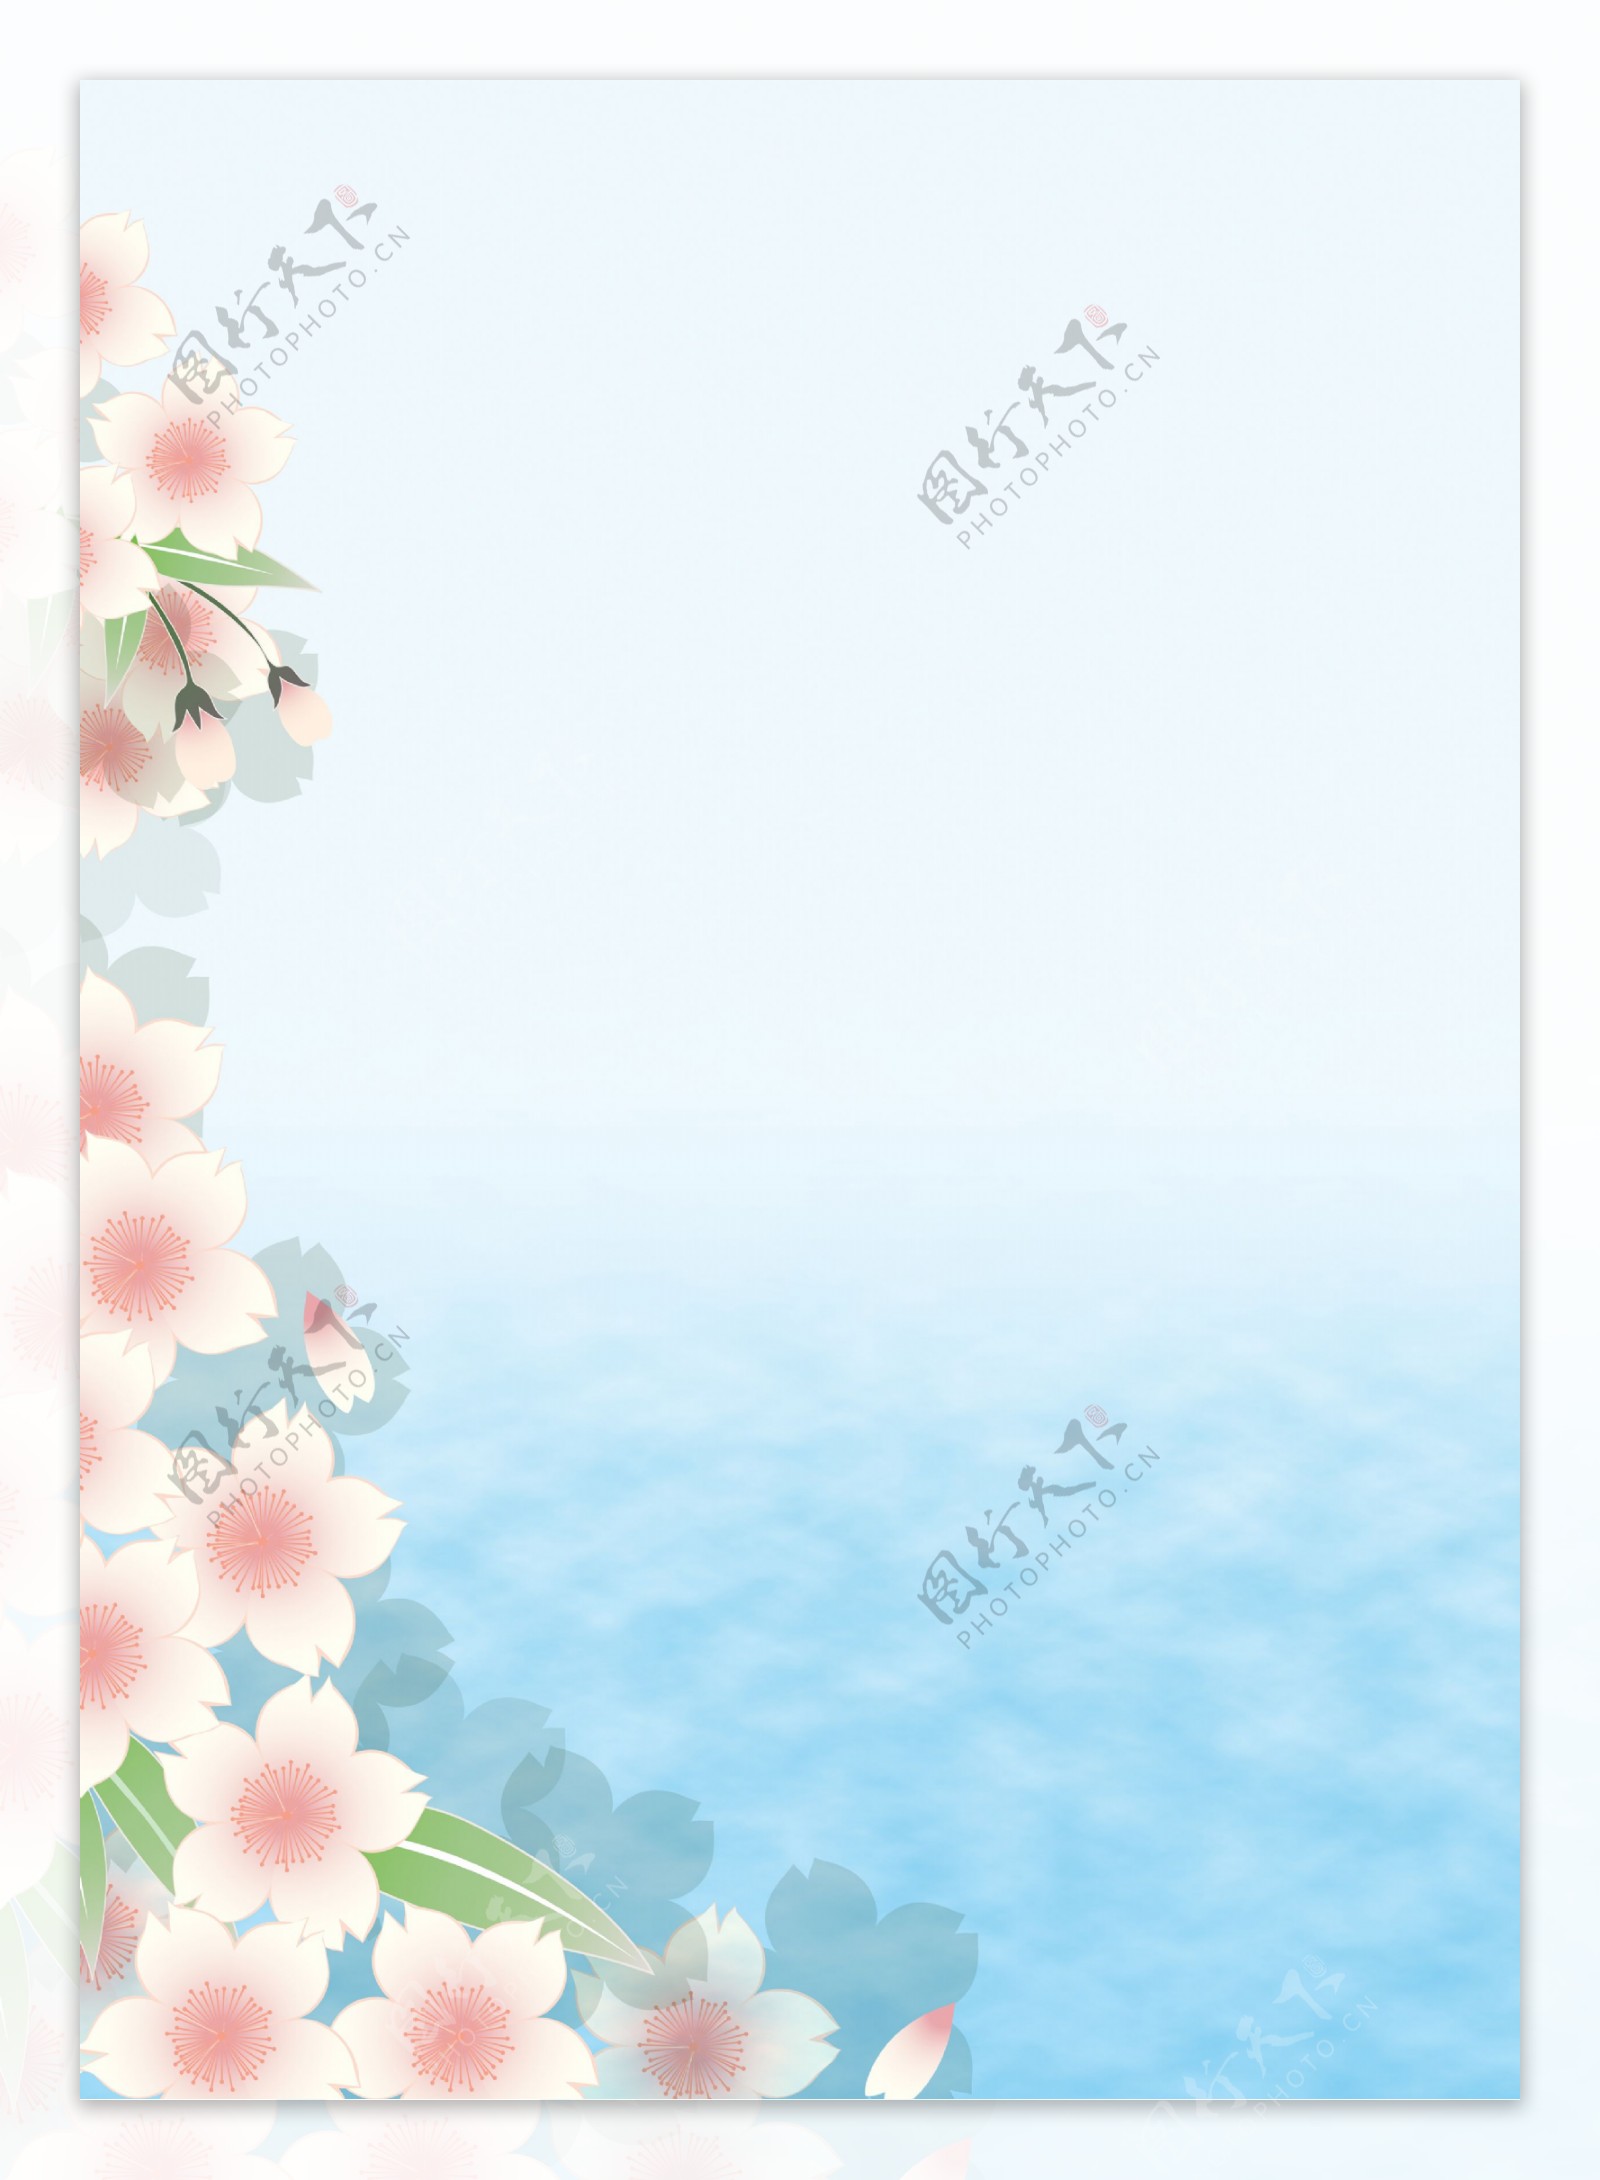 清新大海花朵背景